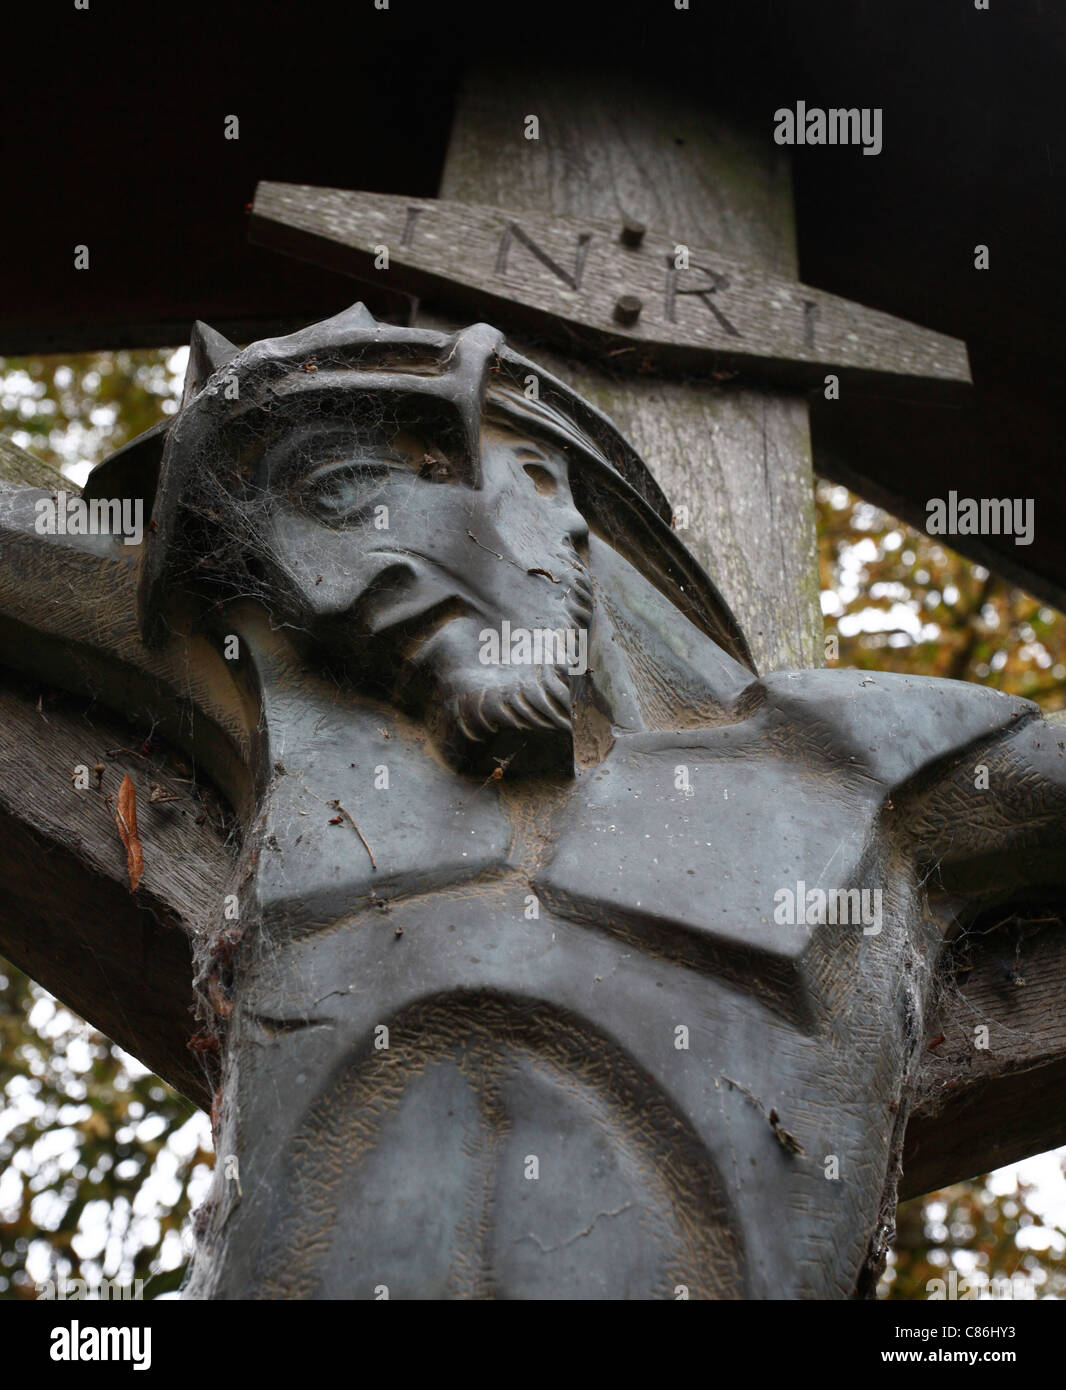 En bois sculpté d'un Christ en croix dans le chgurchyard à St Marys church à Little Walsingham, Norfolk, Angleterre, Royaume-Uni. Banque D'Images